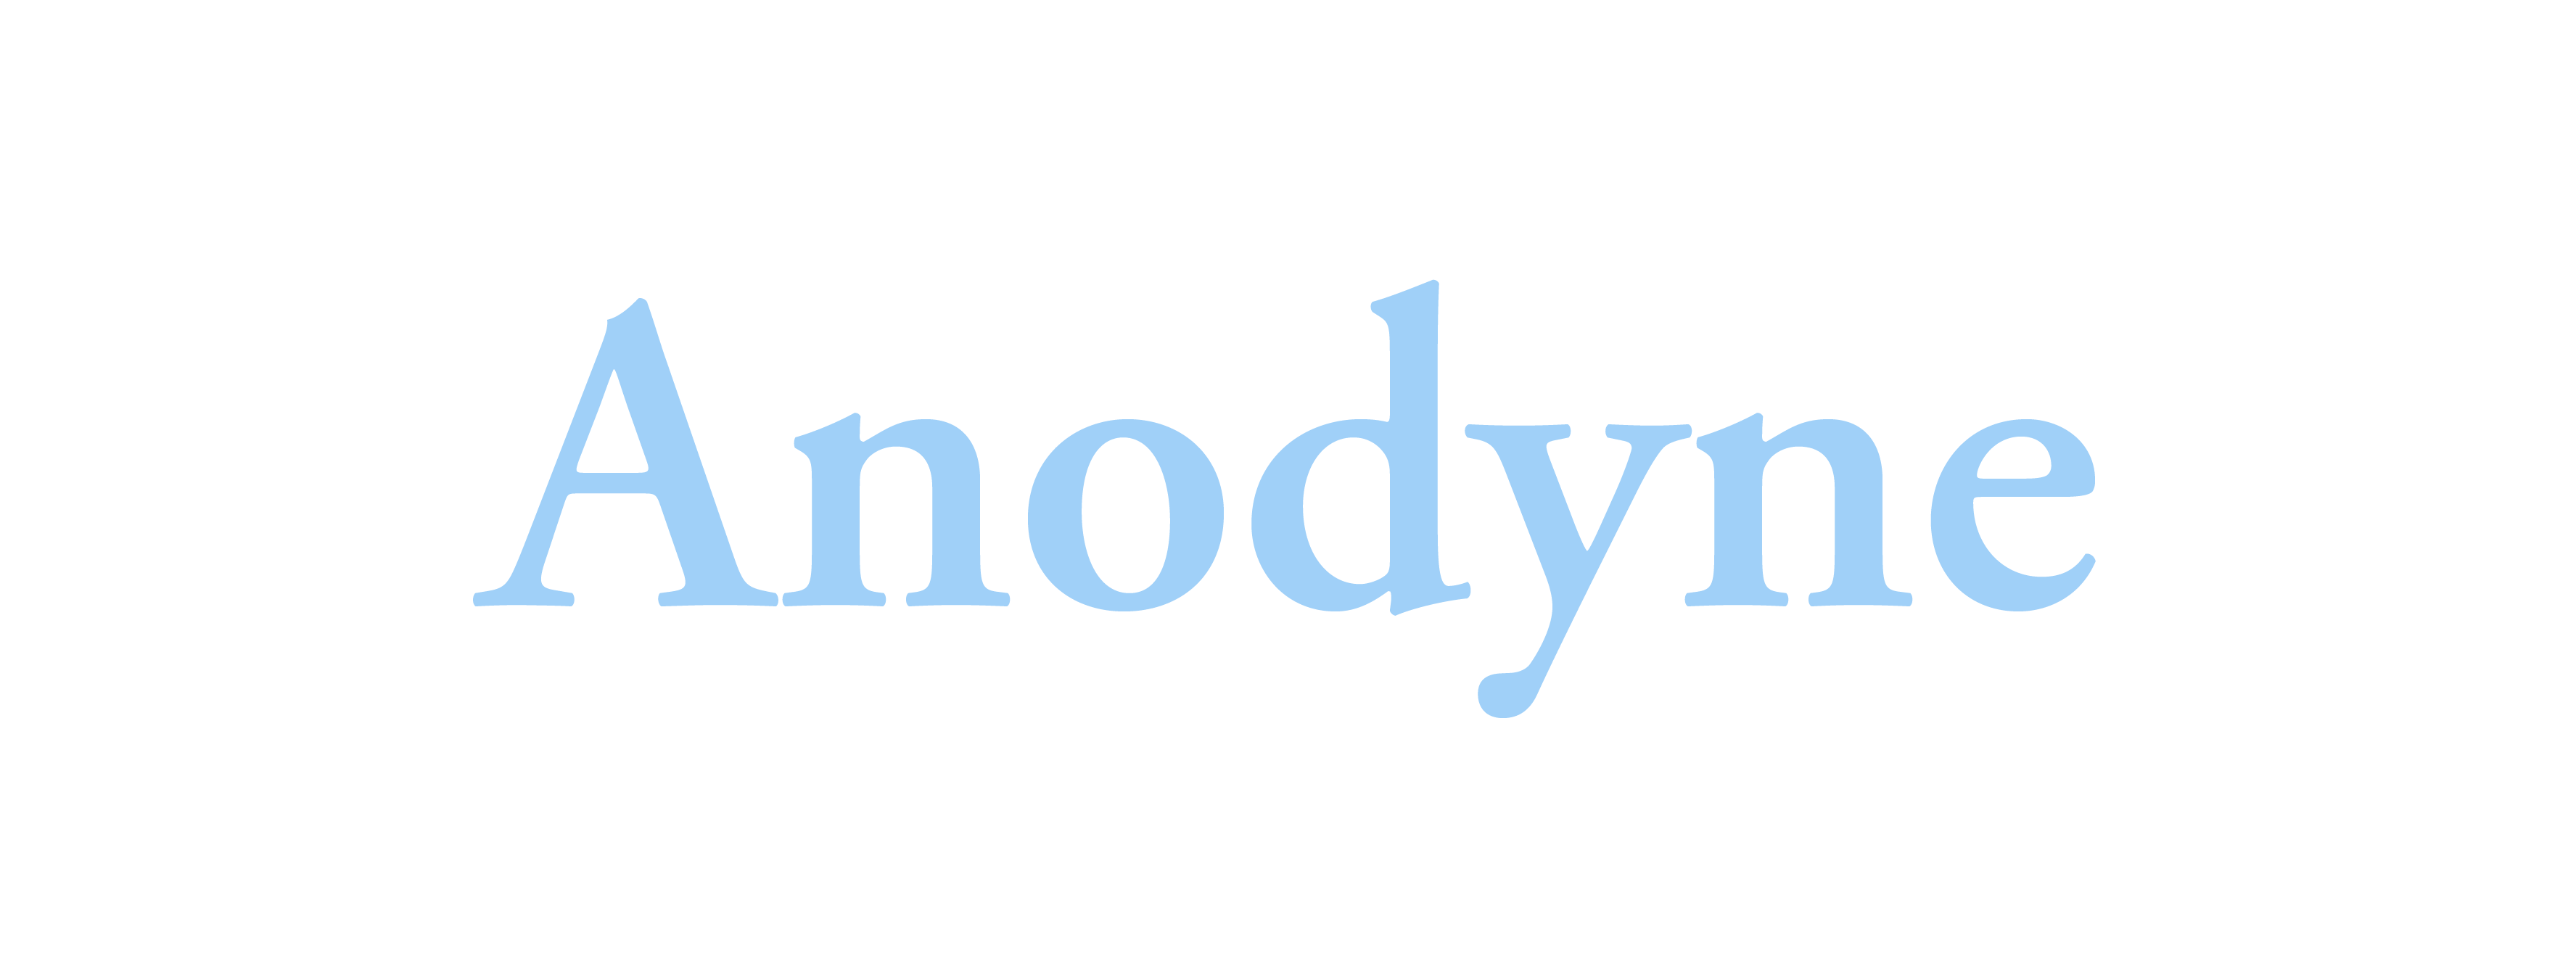 Anodyne - Word Daily